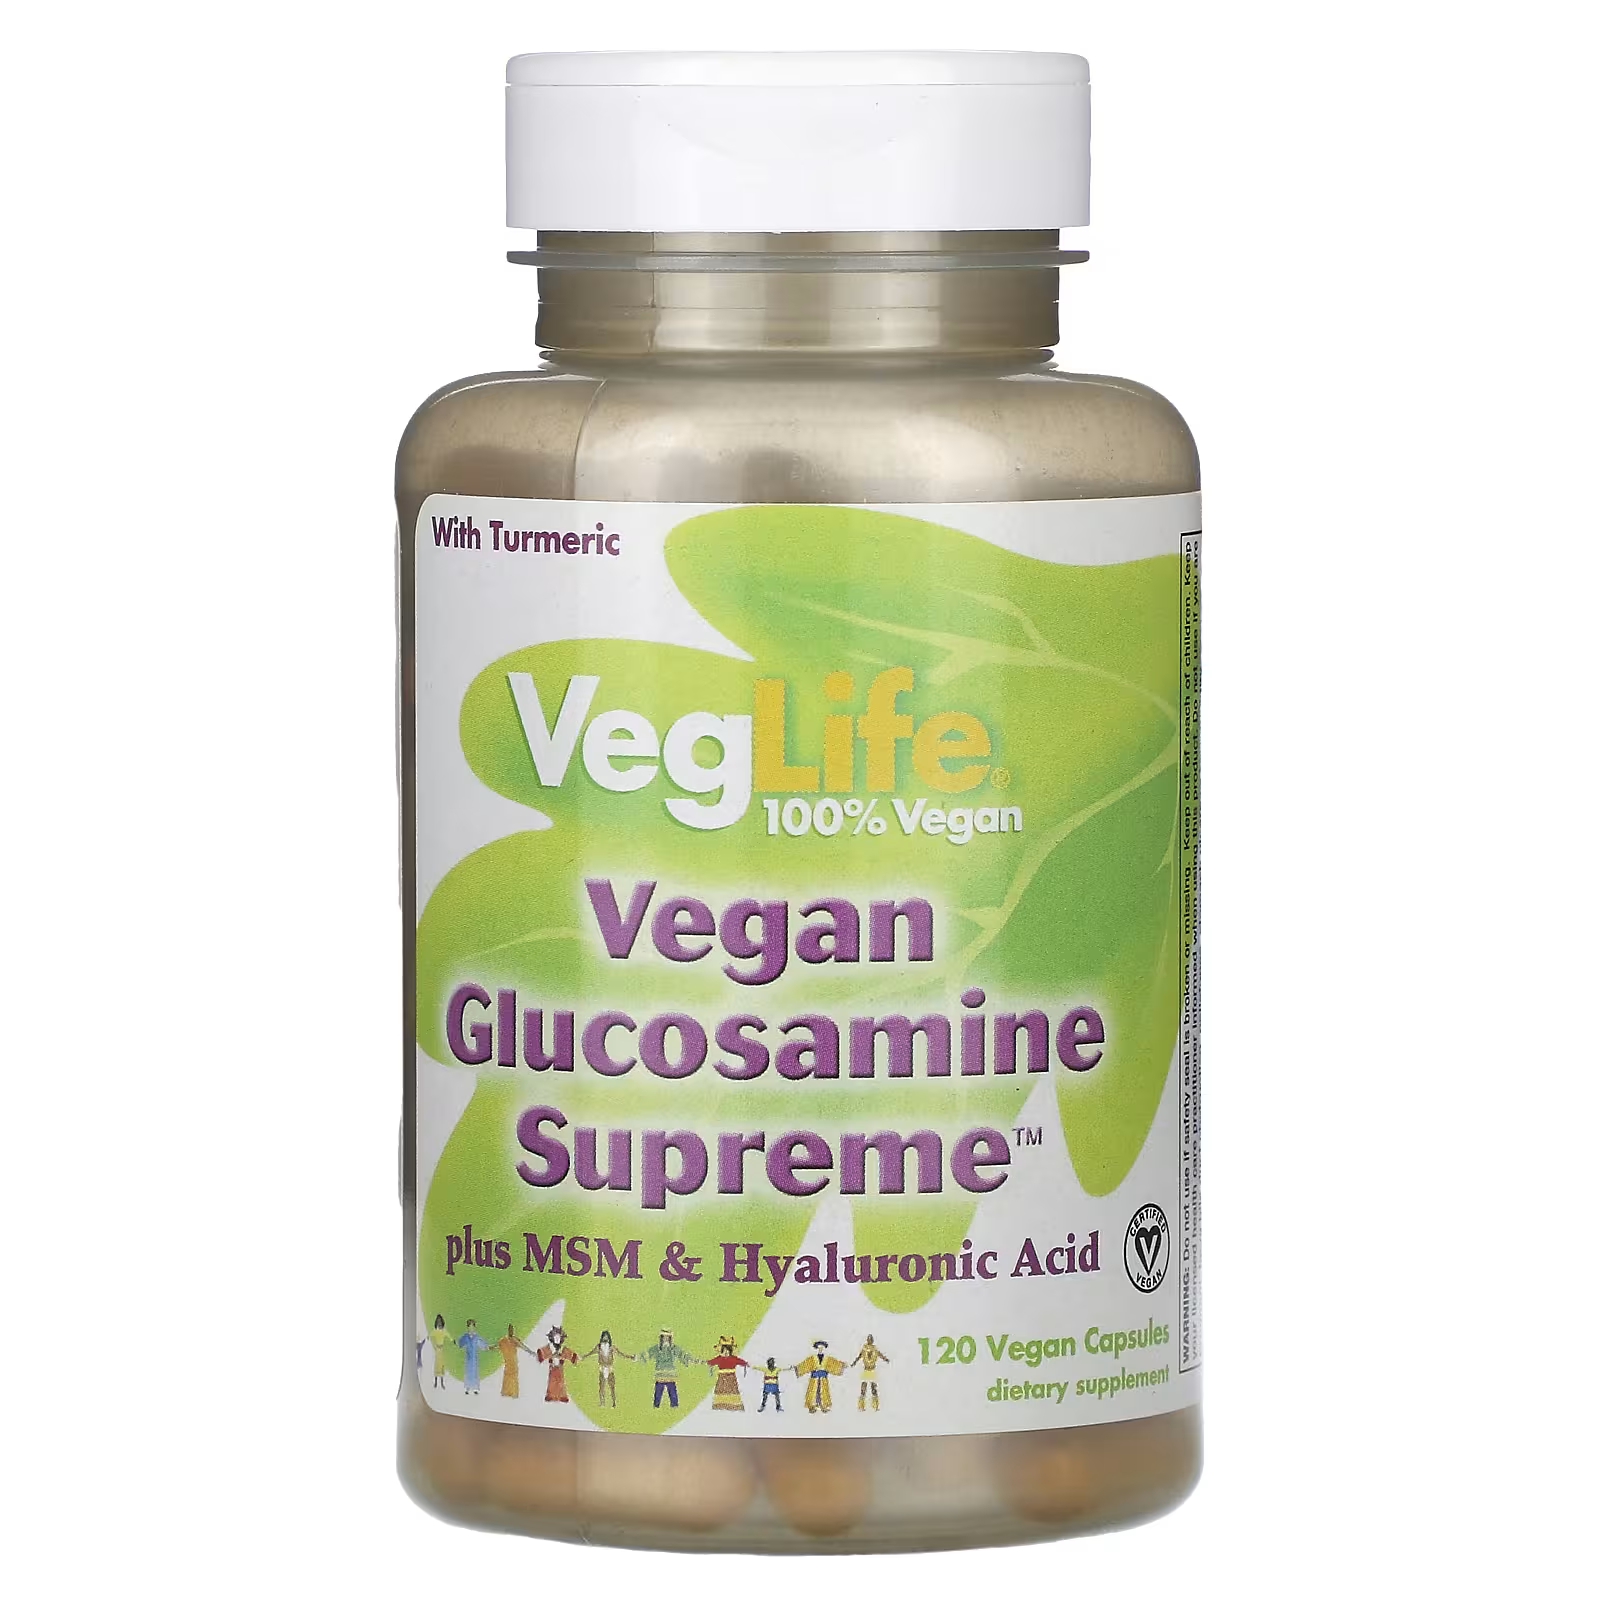 VegLife Vegan Glucosamine Supreme Plus MSM и гиалуроновая кислота, 120 веганских капсул